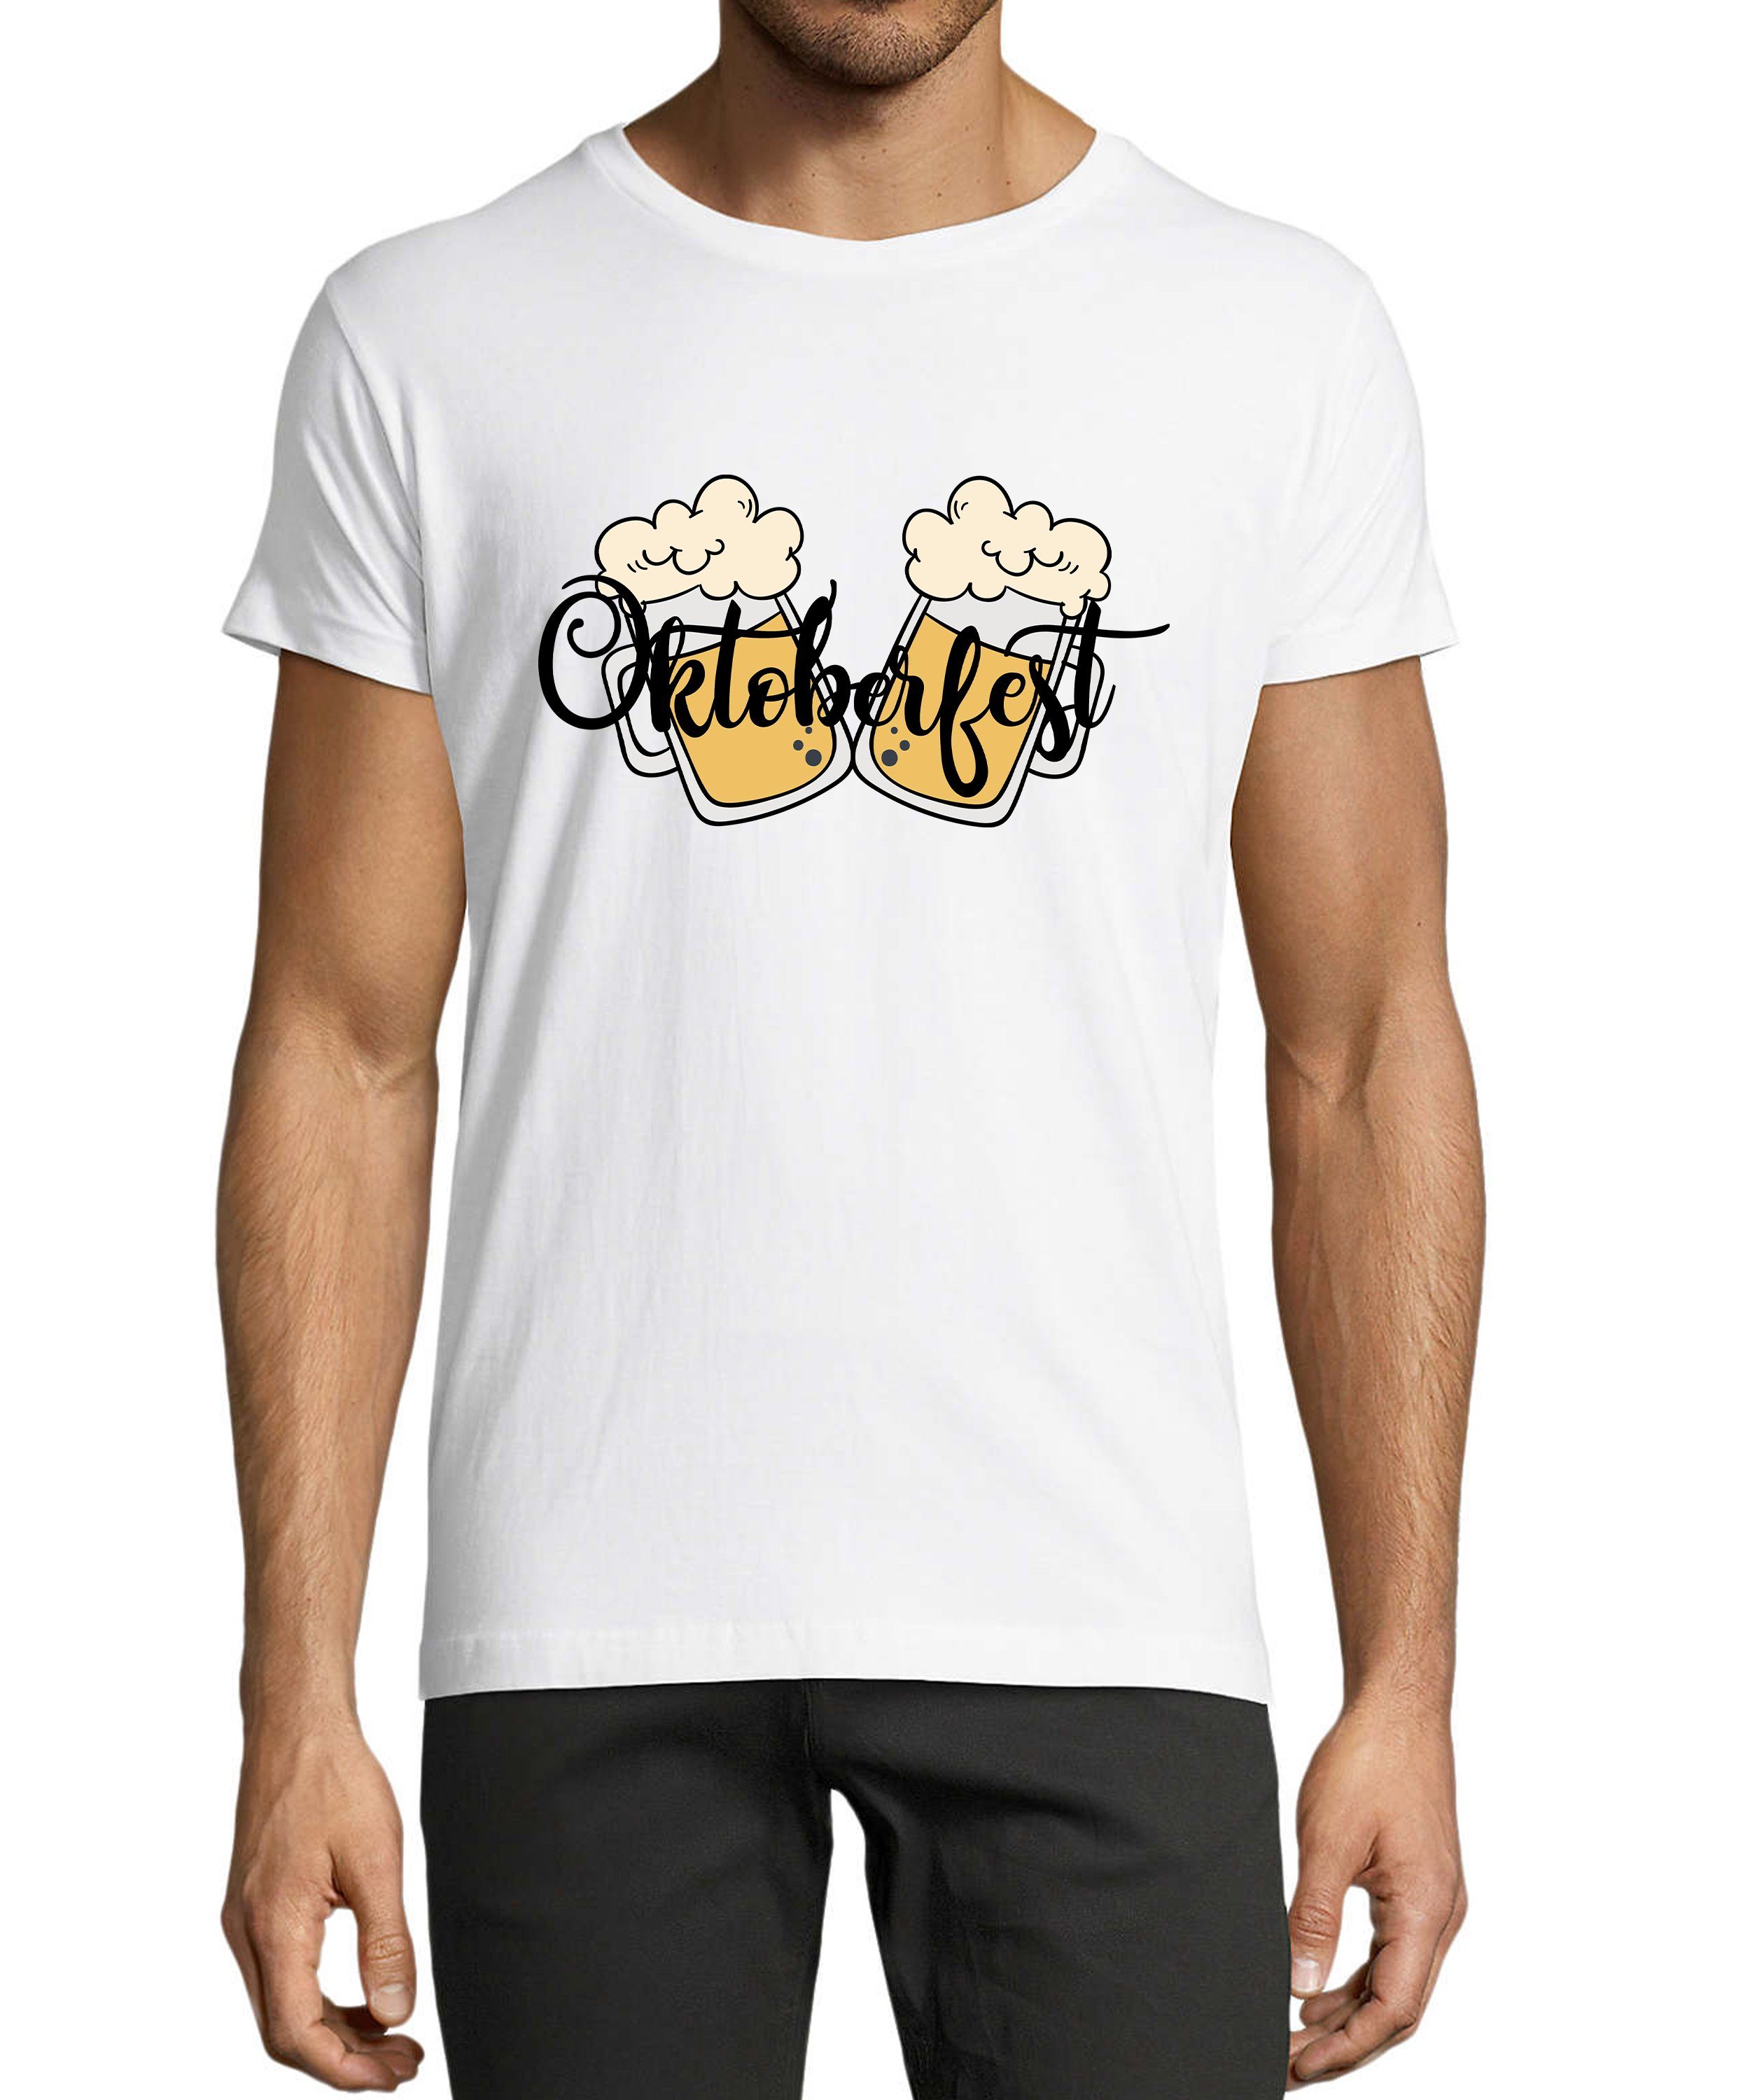 Baumwollshirt Fit, Oktoberfest Trinkshirt Herren Aufdruck mit T-Shirt Party T-Shirt Regular weiss - Biergläser 2 MyDesign24 i326 Shirt